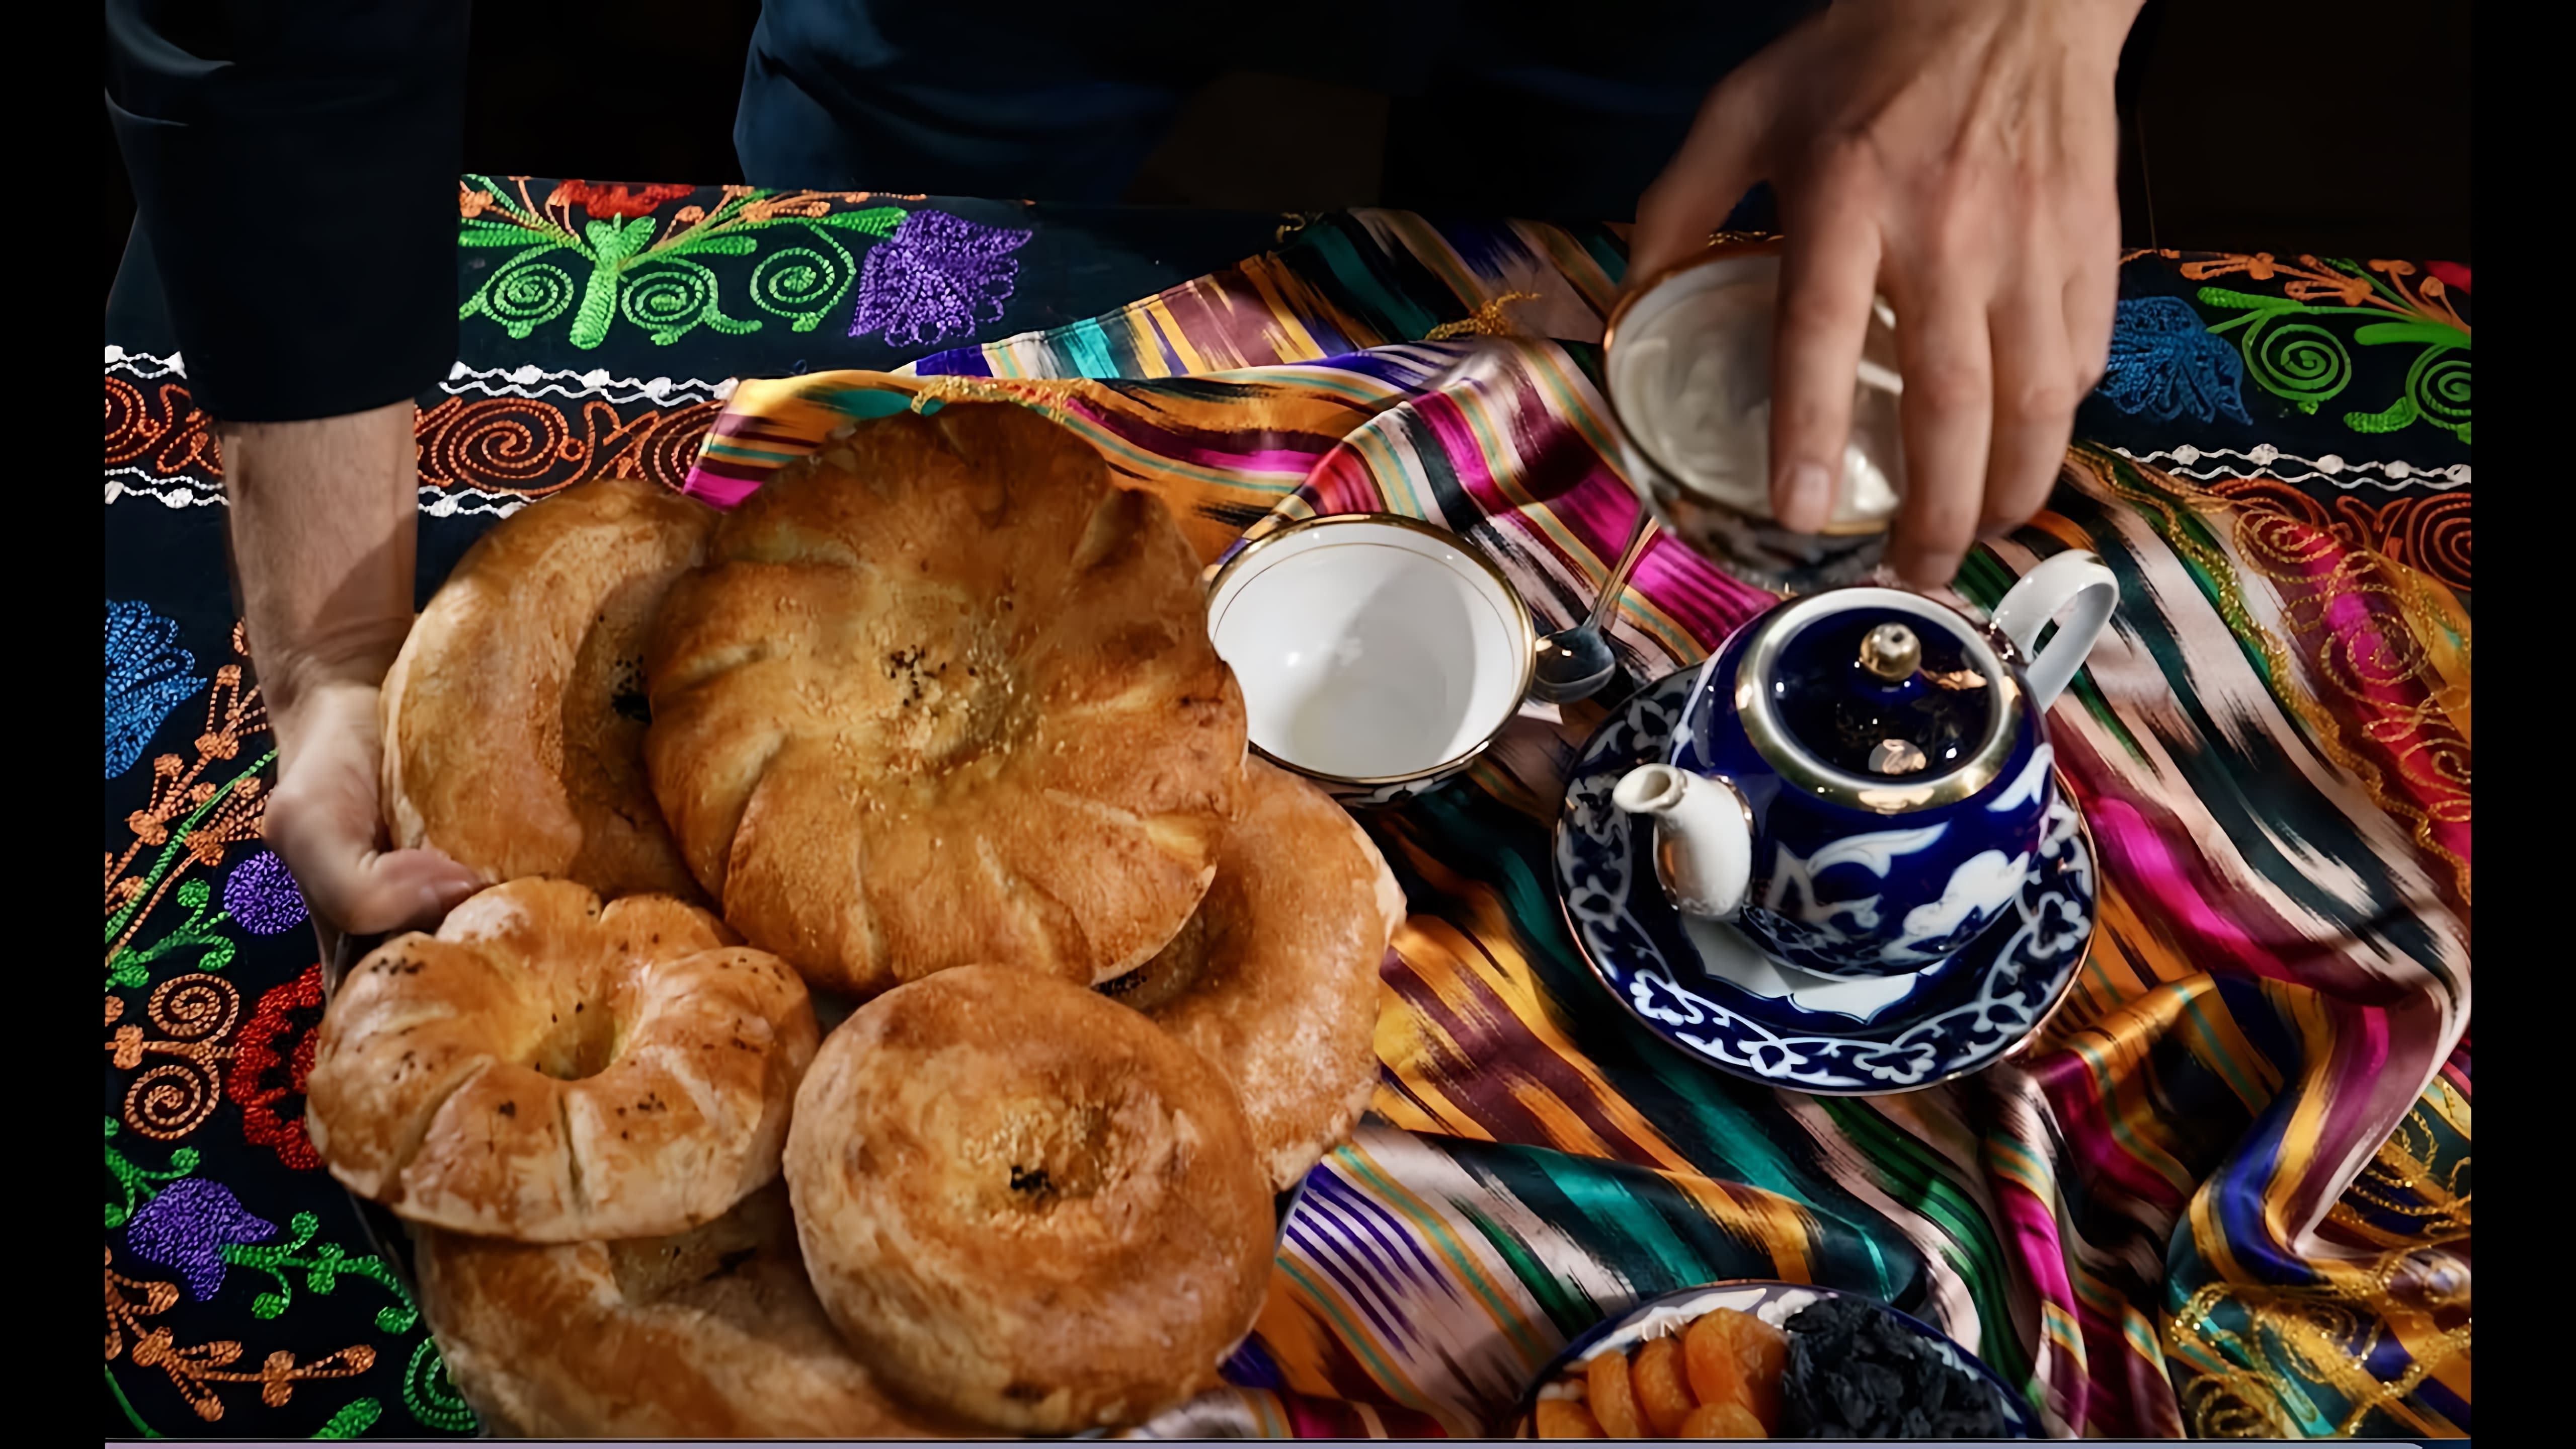 В этом видео Сталик Ханкишиев рассказывает историю узбекских лепешек, которые он полюбил в детстве